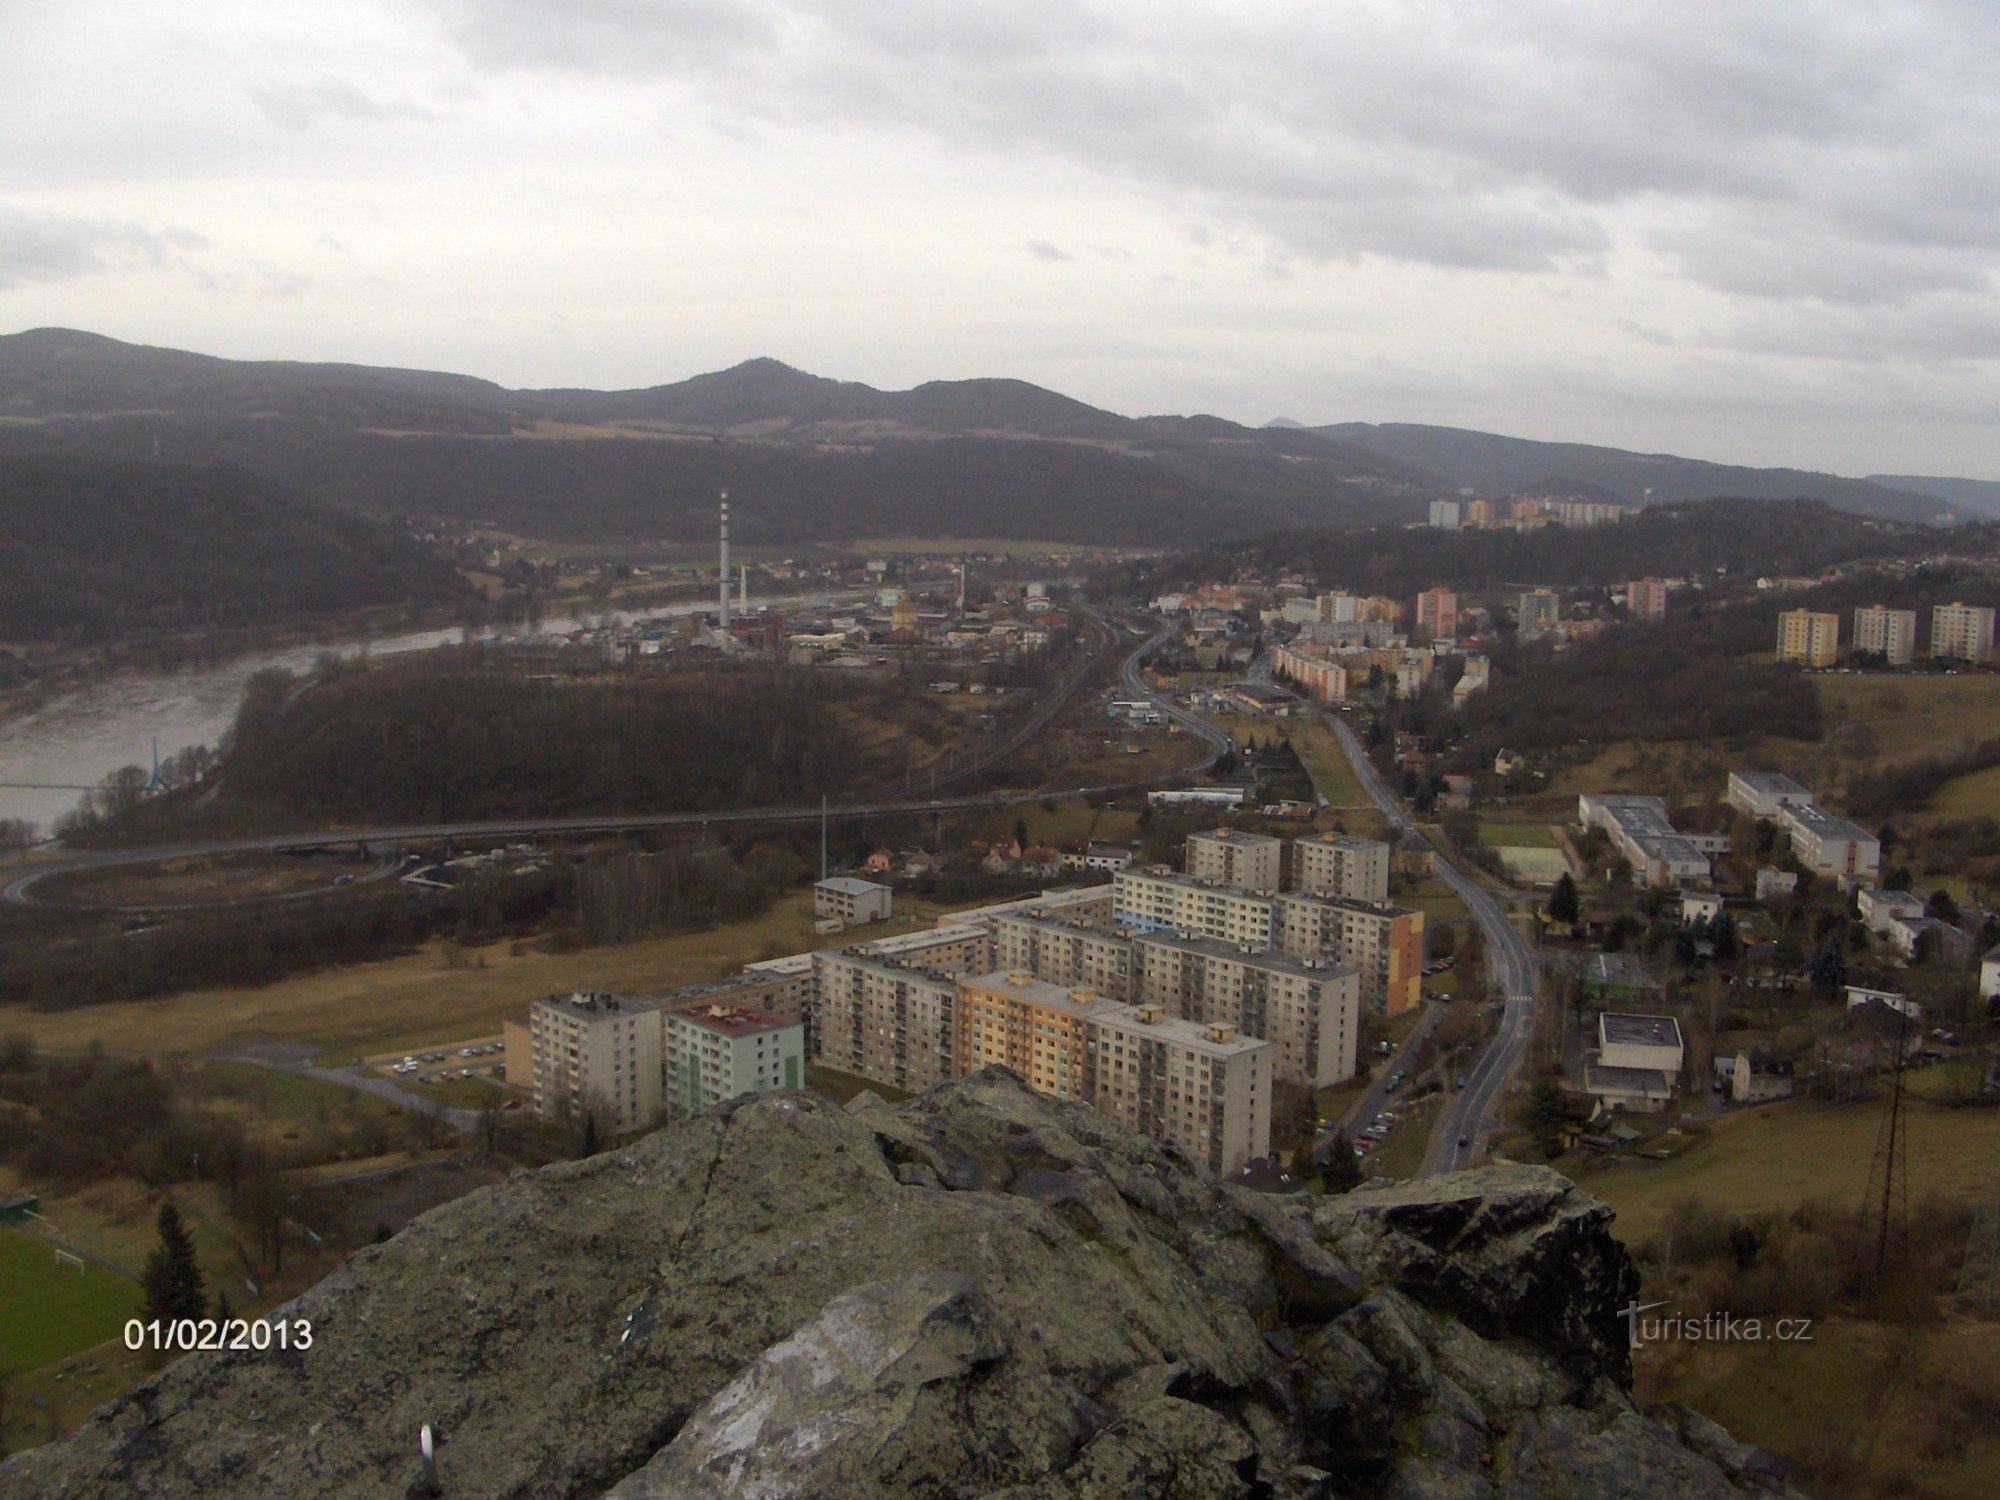 view from the ruins of Strážný castle